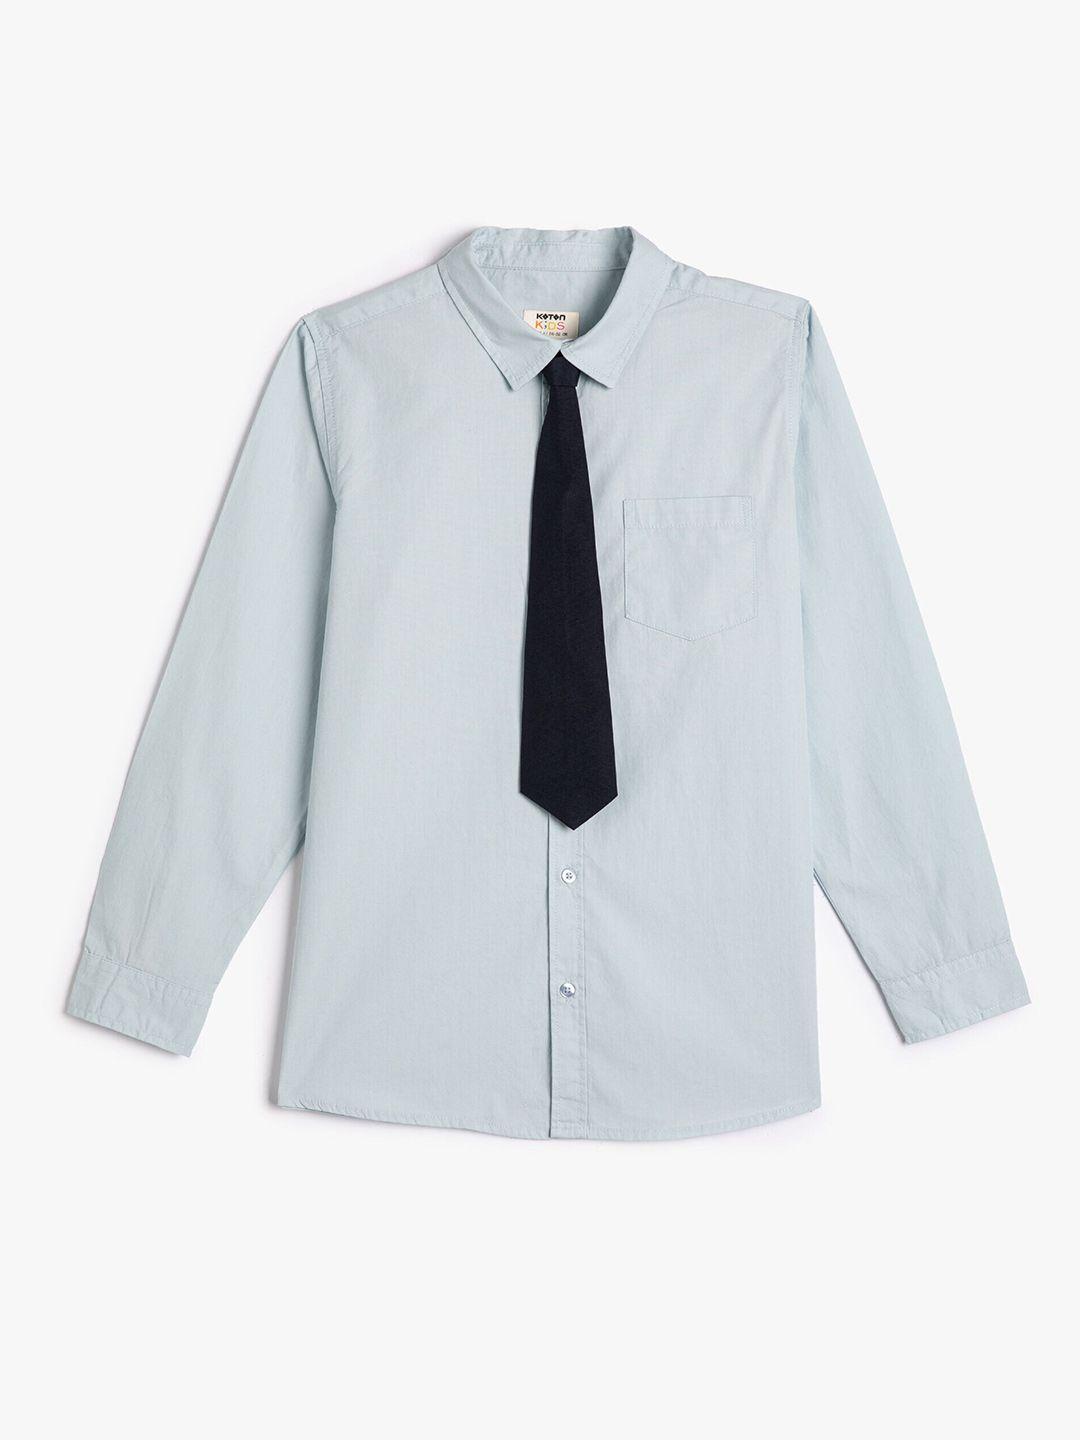 koton boys opaque pure cotton casual shirt